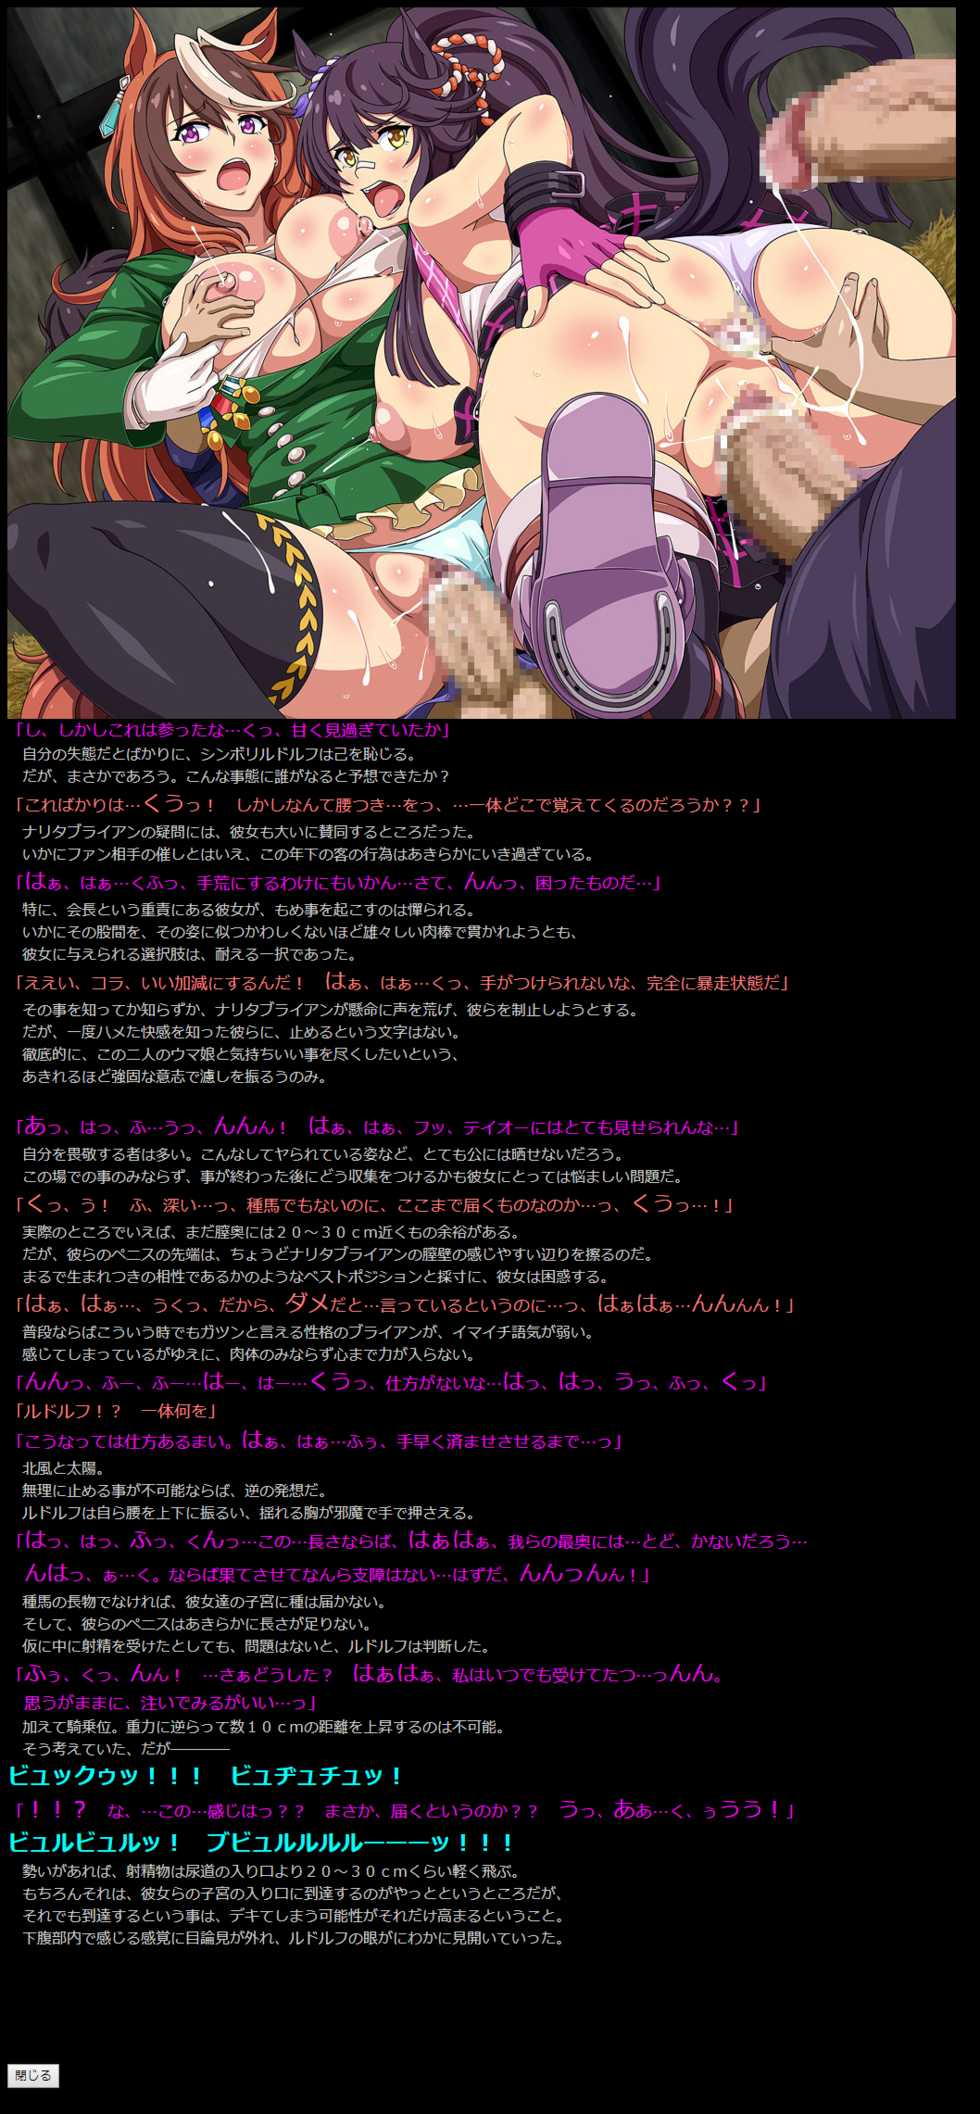 [LolitaChannel (Arigase Shinji)] Yuumei Chara Kannou Shousetsu CG Shuu No. 395!! Uma Musume Pretty Derby HaaHaa CG Shuu (Uma Musume Pretty Derby) - Page 20